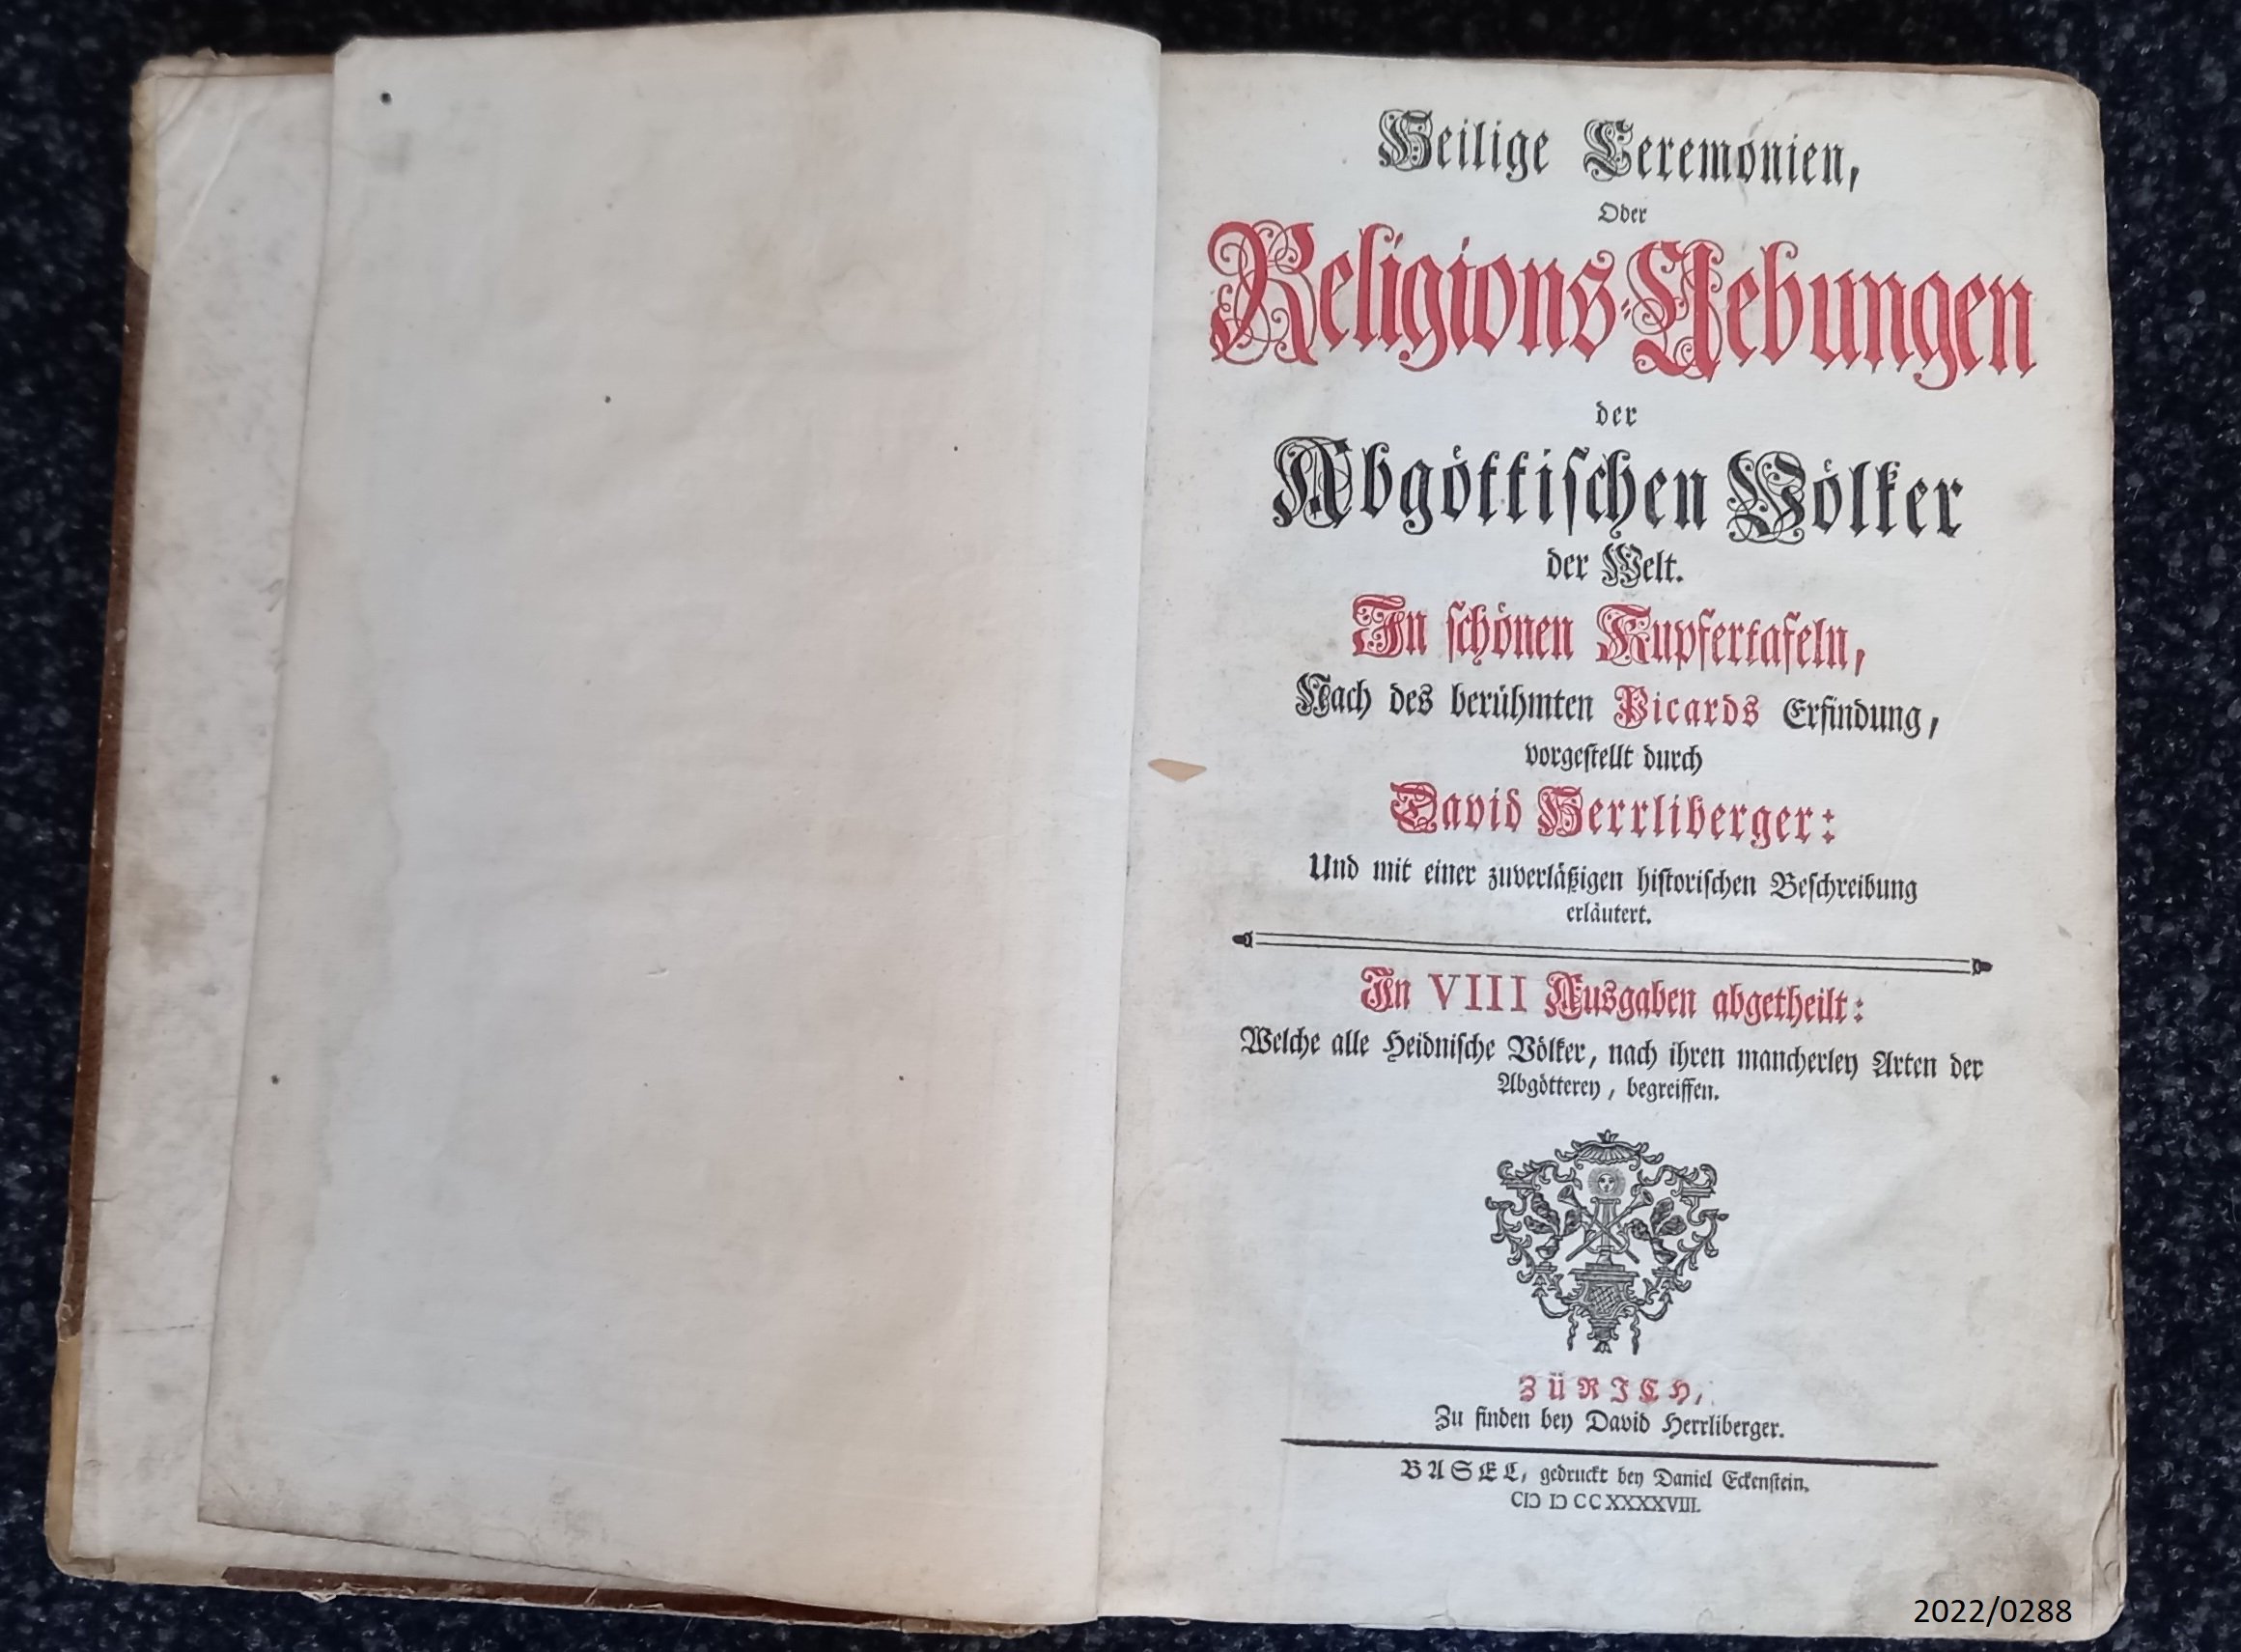 Buch "Heilige Ceremonien der Religionsübungen der abgöttischen Völker",1748 (Stadtmuseum Bad Dürkheim im Kulturzentrum Haus Catoir CC BY-NC-SA)